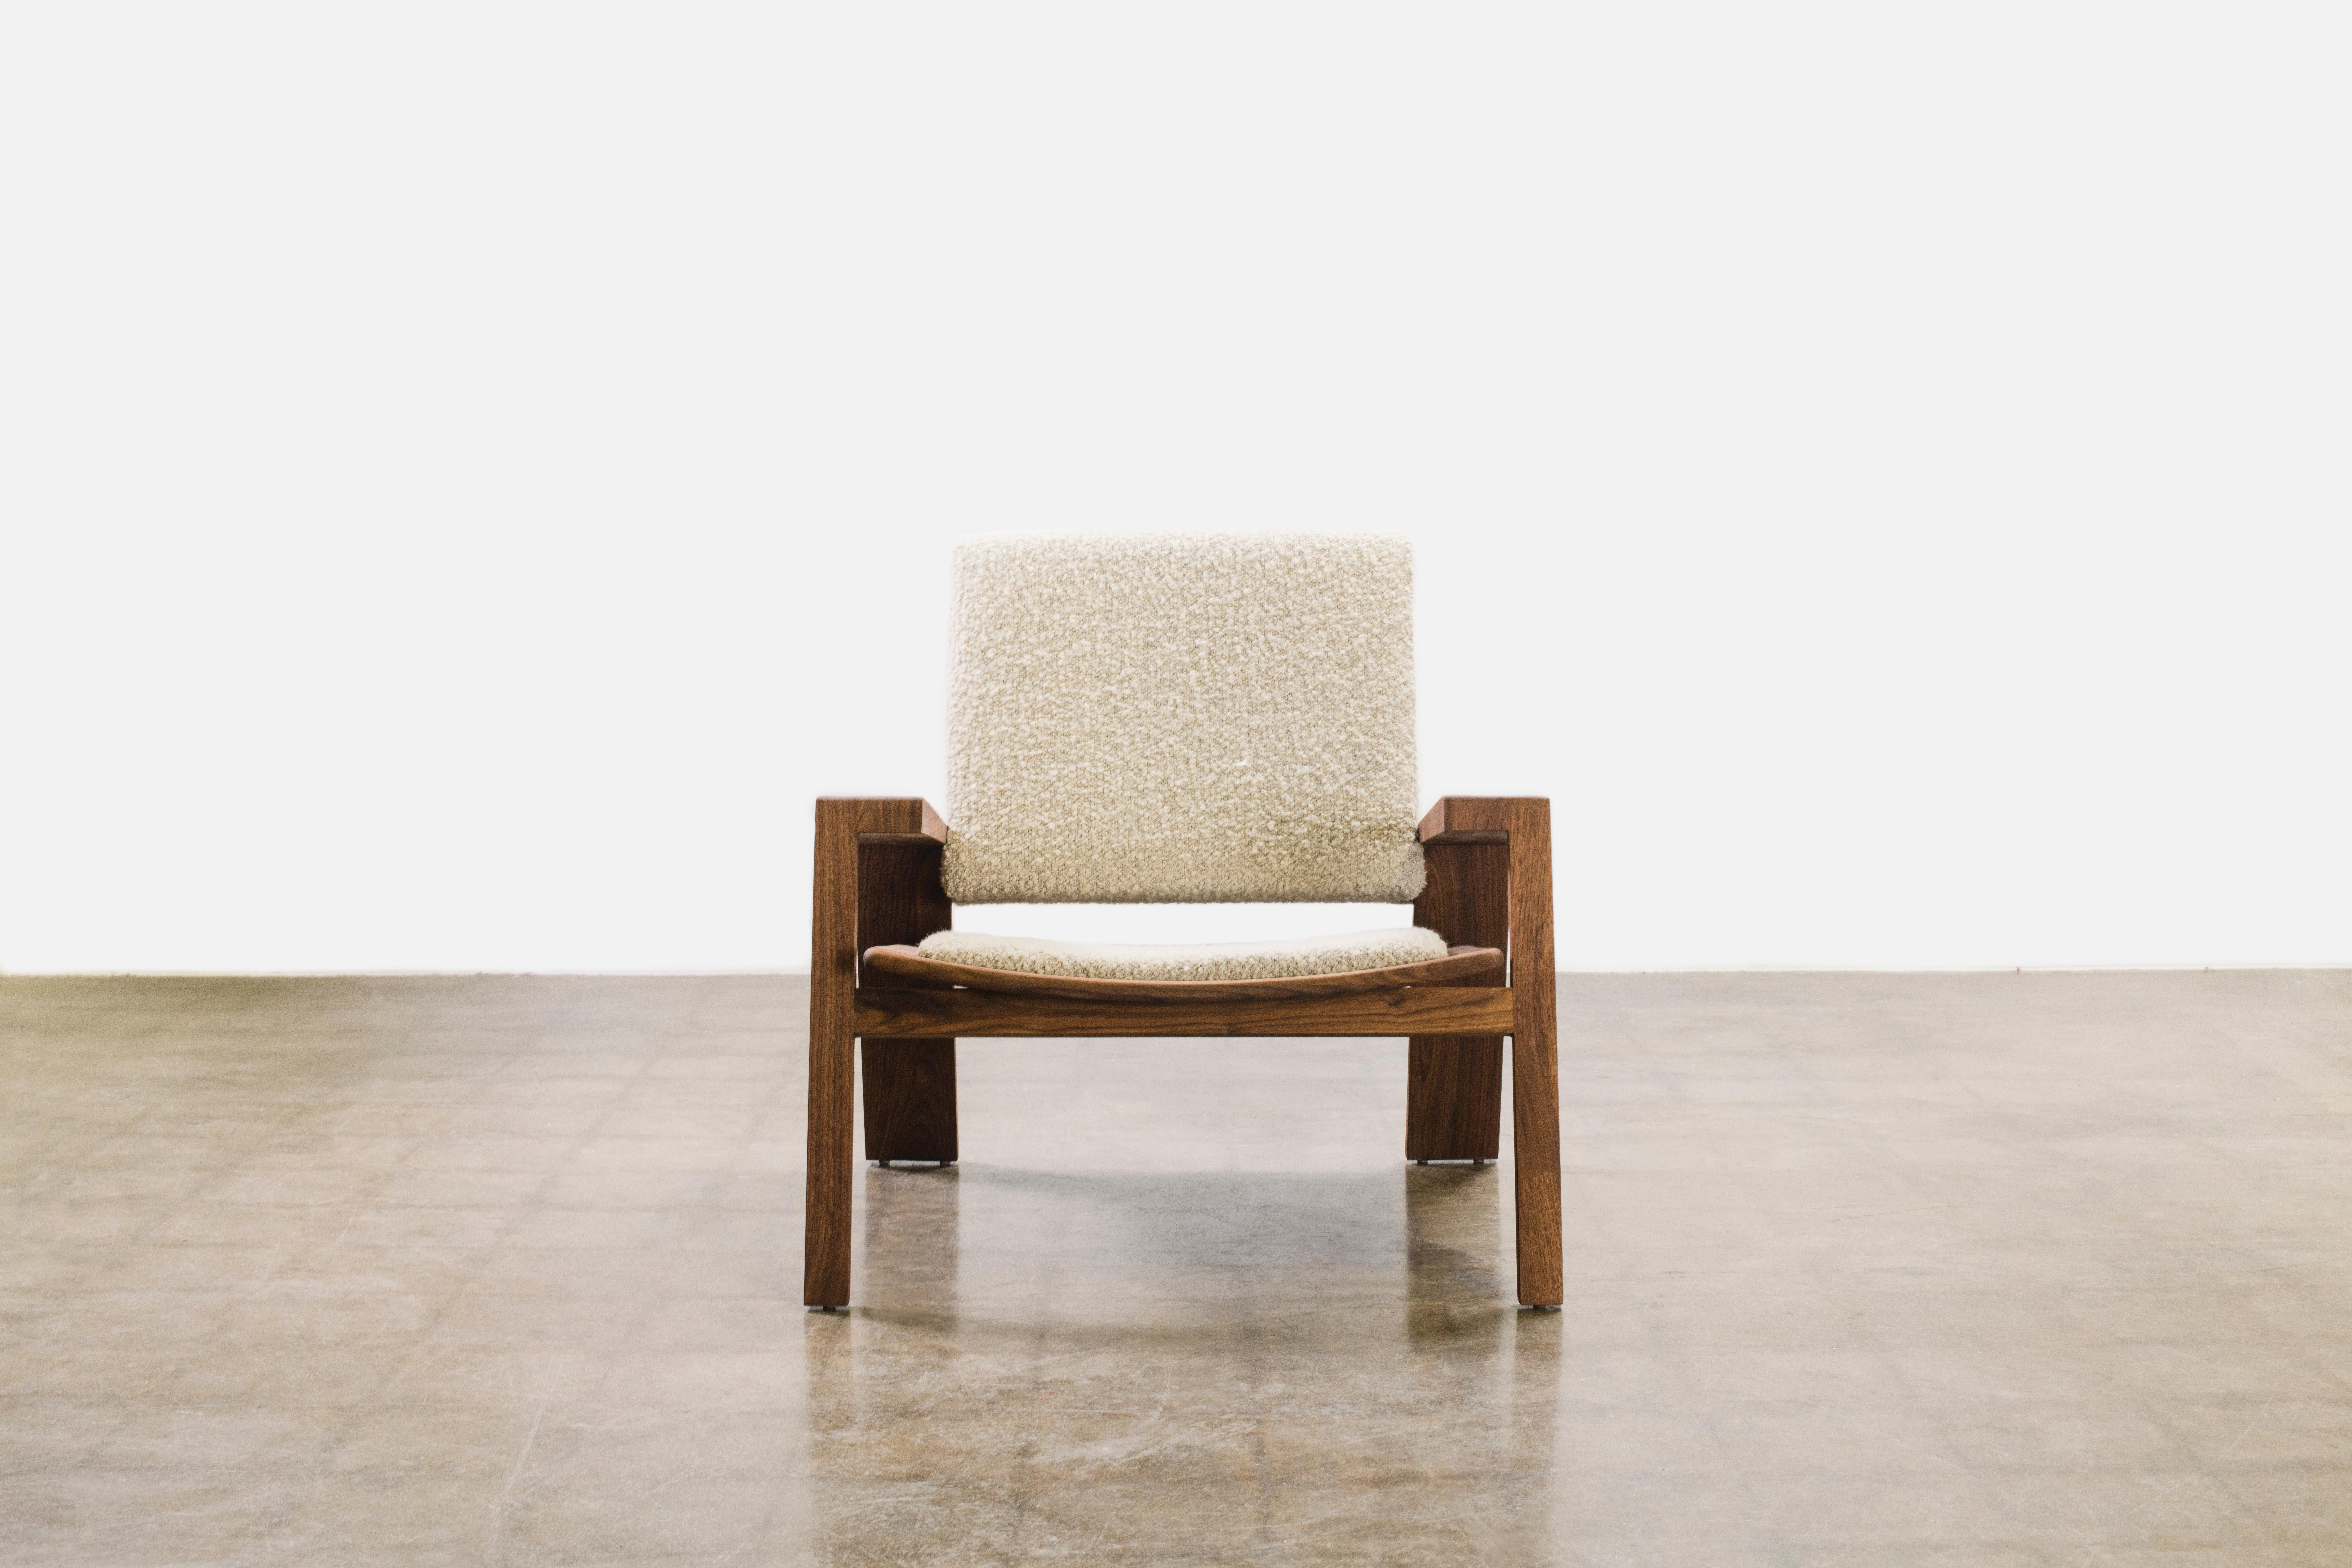 Der Rhoco Chair ist Teil der neuen Shapes From Home Collection von Levi Christiansen. Es ist eine Neuinterpretation traditioneller Holzbearbeitungstechniken und kombiniert auf elegante Weise kühne Formen und markante geometrische Linien mit